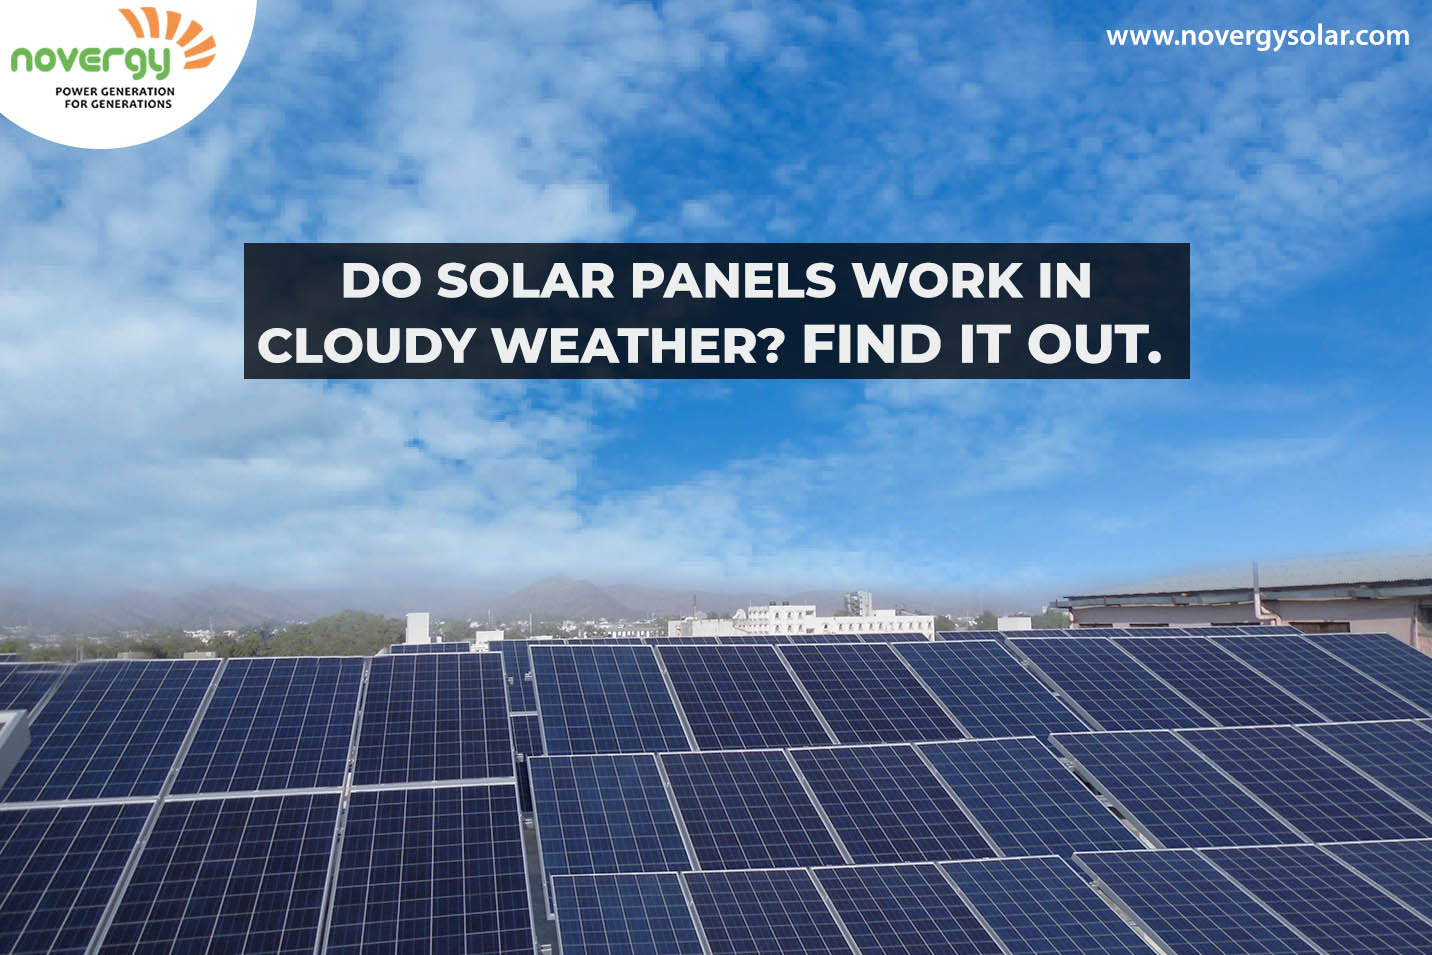 Do Panels Work on Cloudy or Rainy Days? - Novergy Solar